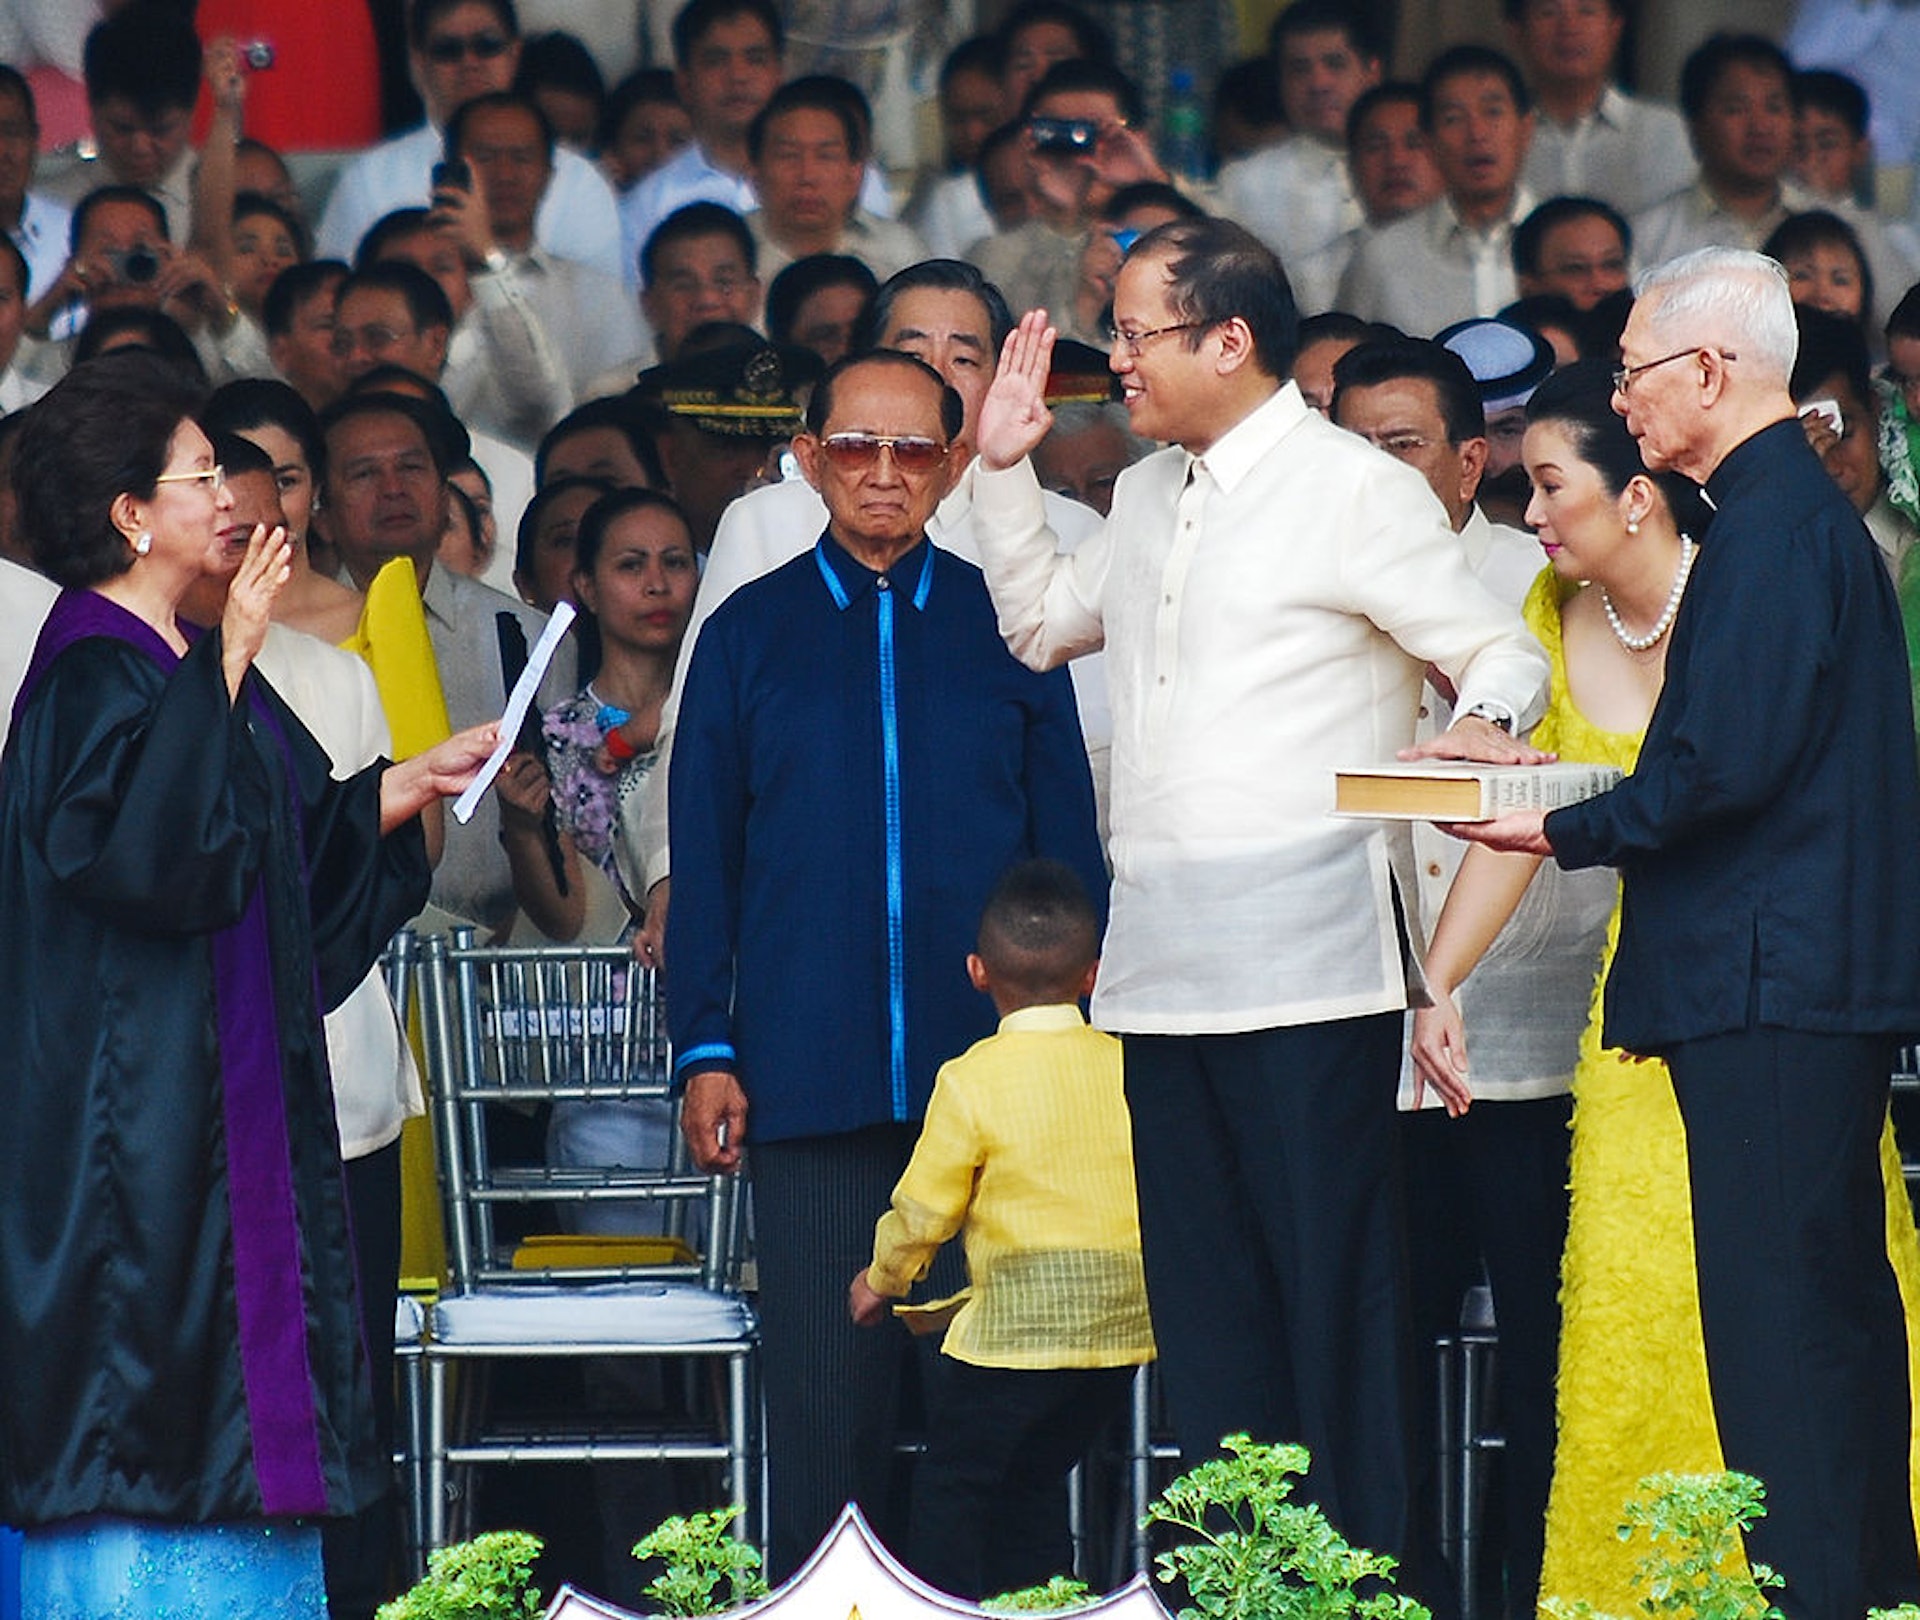 图为2010年6月30日，菲律宾前总统拉莫斯（图中第二排穿深蓝外套者）出席菲律宾前总统阿基诺三世（Benigno Aquino III，穿白衣黑裤者）的就职礼。 阿基诺三世2021年6月24日逝世。 （Getty）